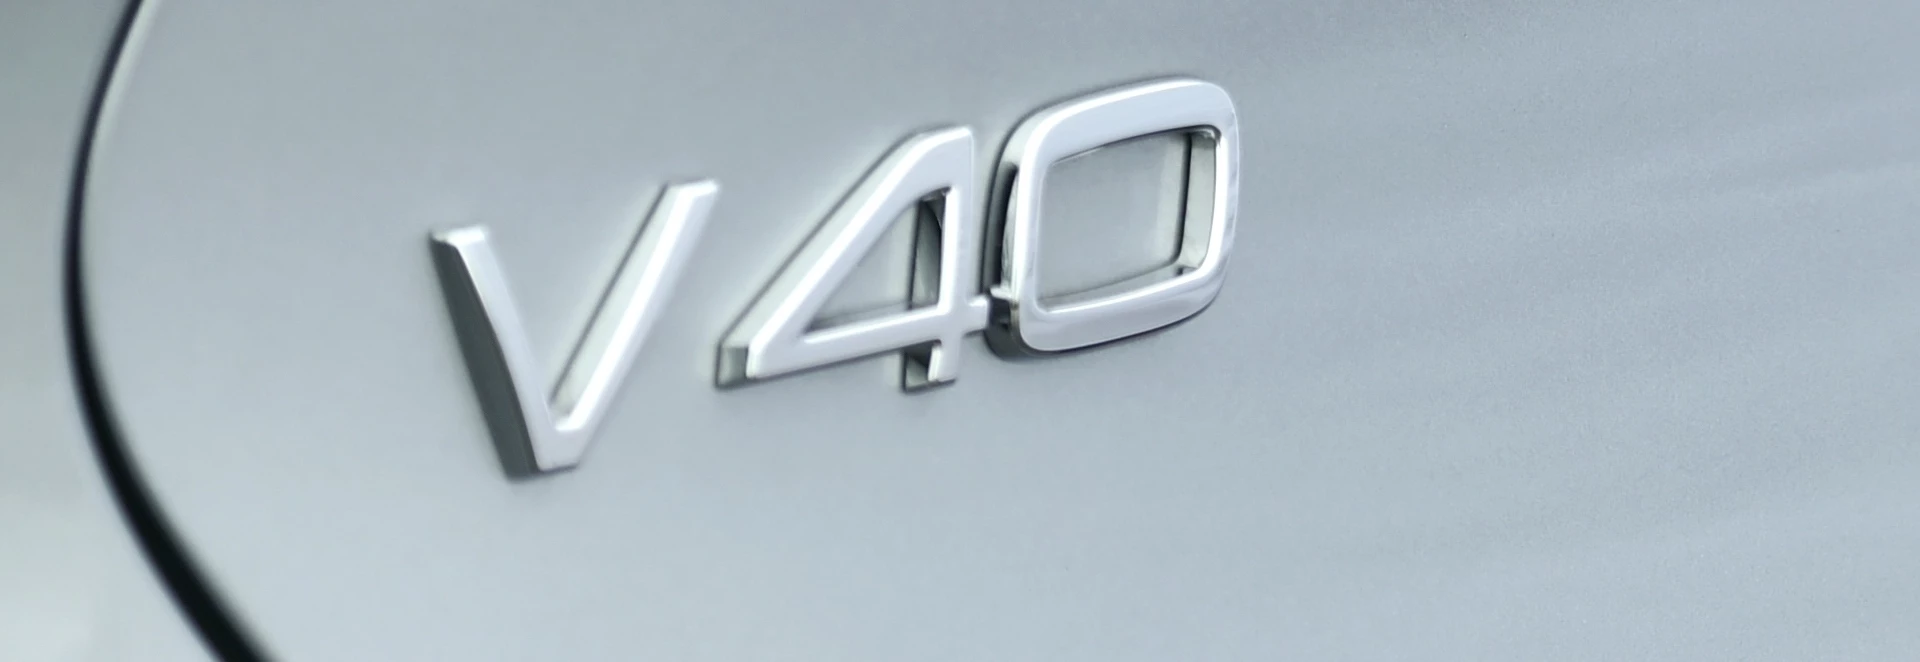 Volvo V40 facelift confirmed 